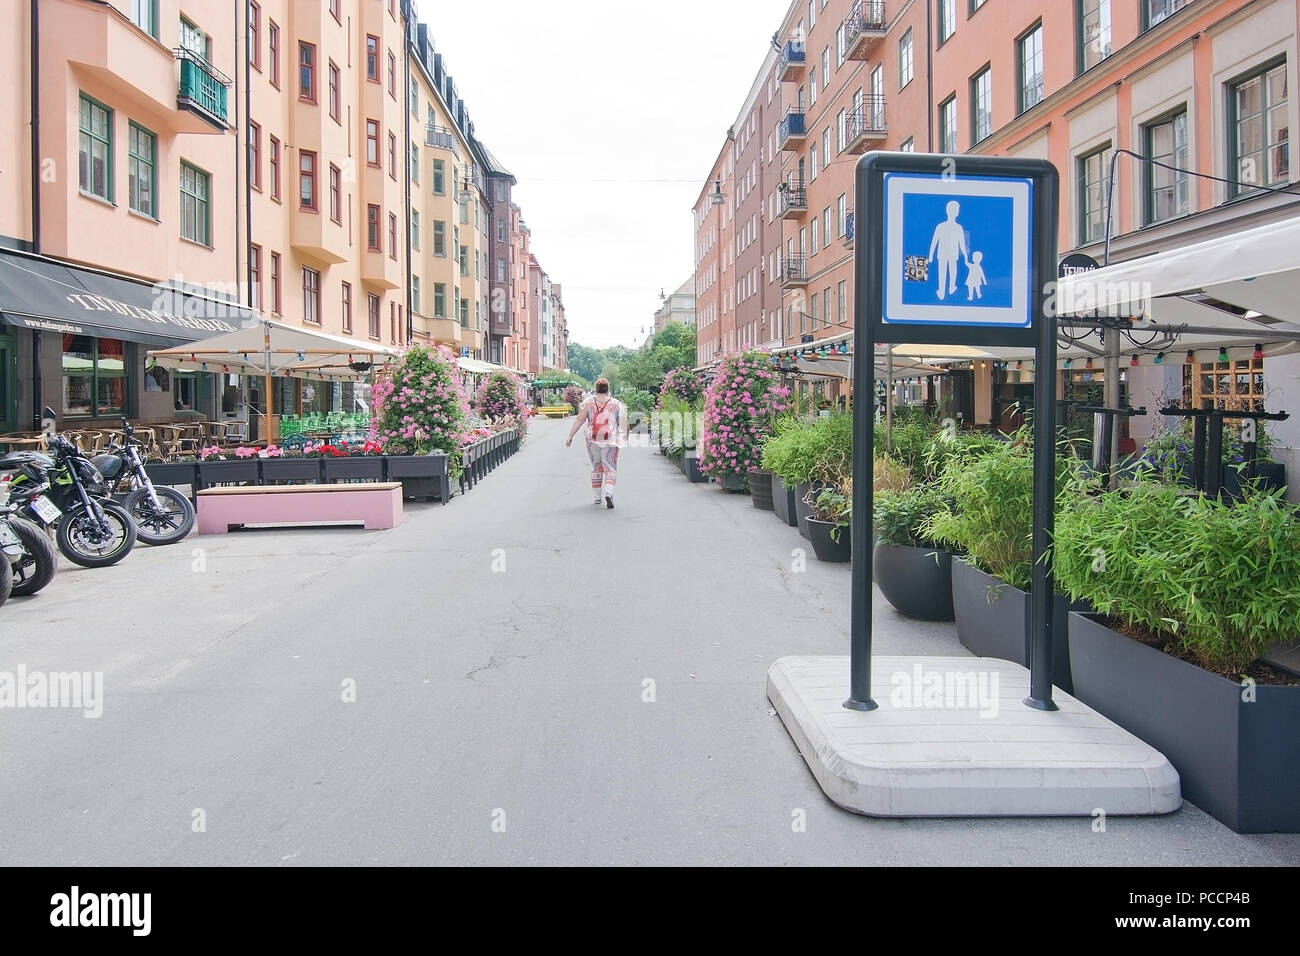 STOCKHOLM, Schweden - 11. JULI 2018: Fußgängerzone mit Vorzeichen und Restaurants auf Rorstrandsgatan in Vasastan am 11. Juli 2018 in Stockholm, Schweden. Stockfoto